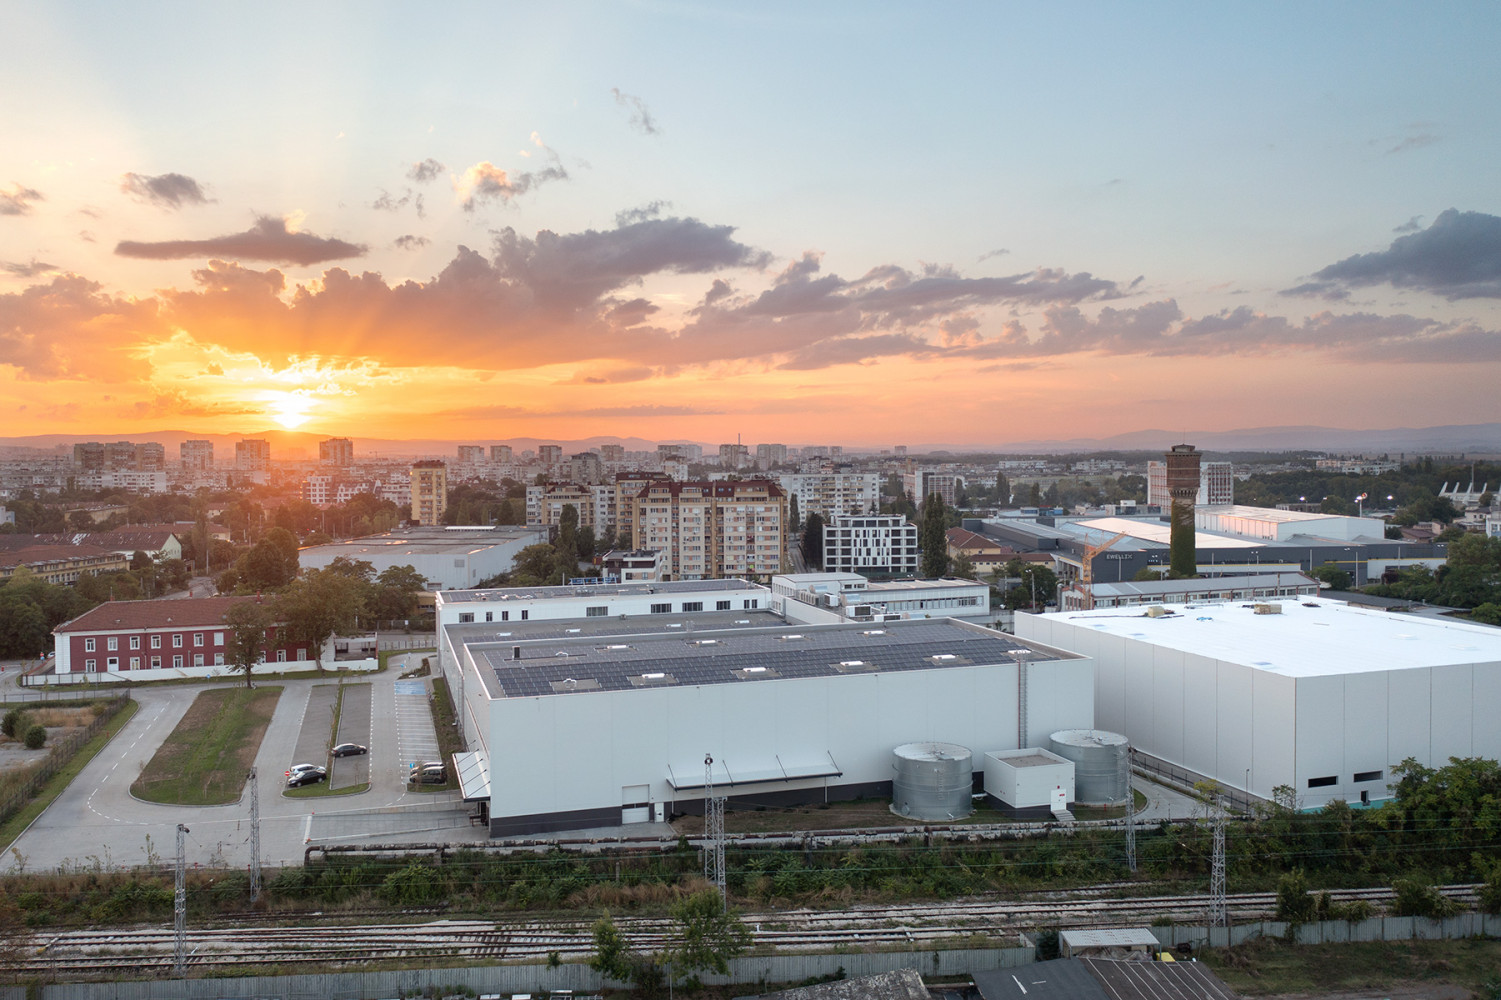 Teletek Electronics Production and Administrative base Sofia